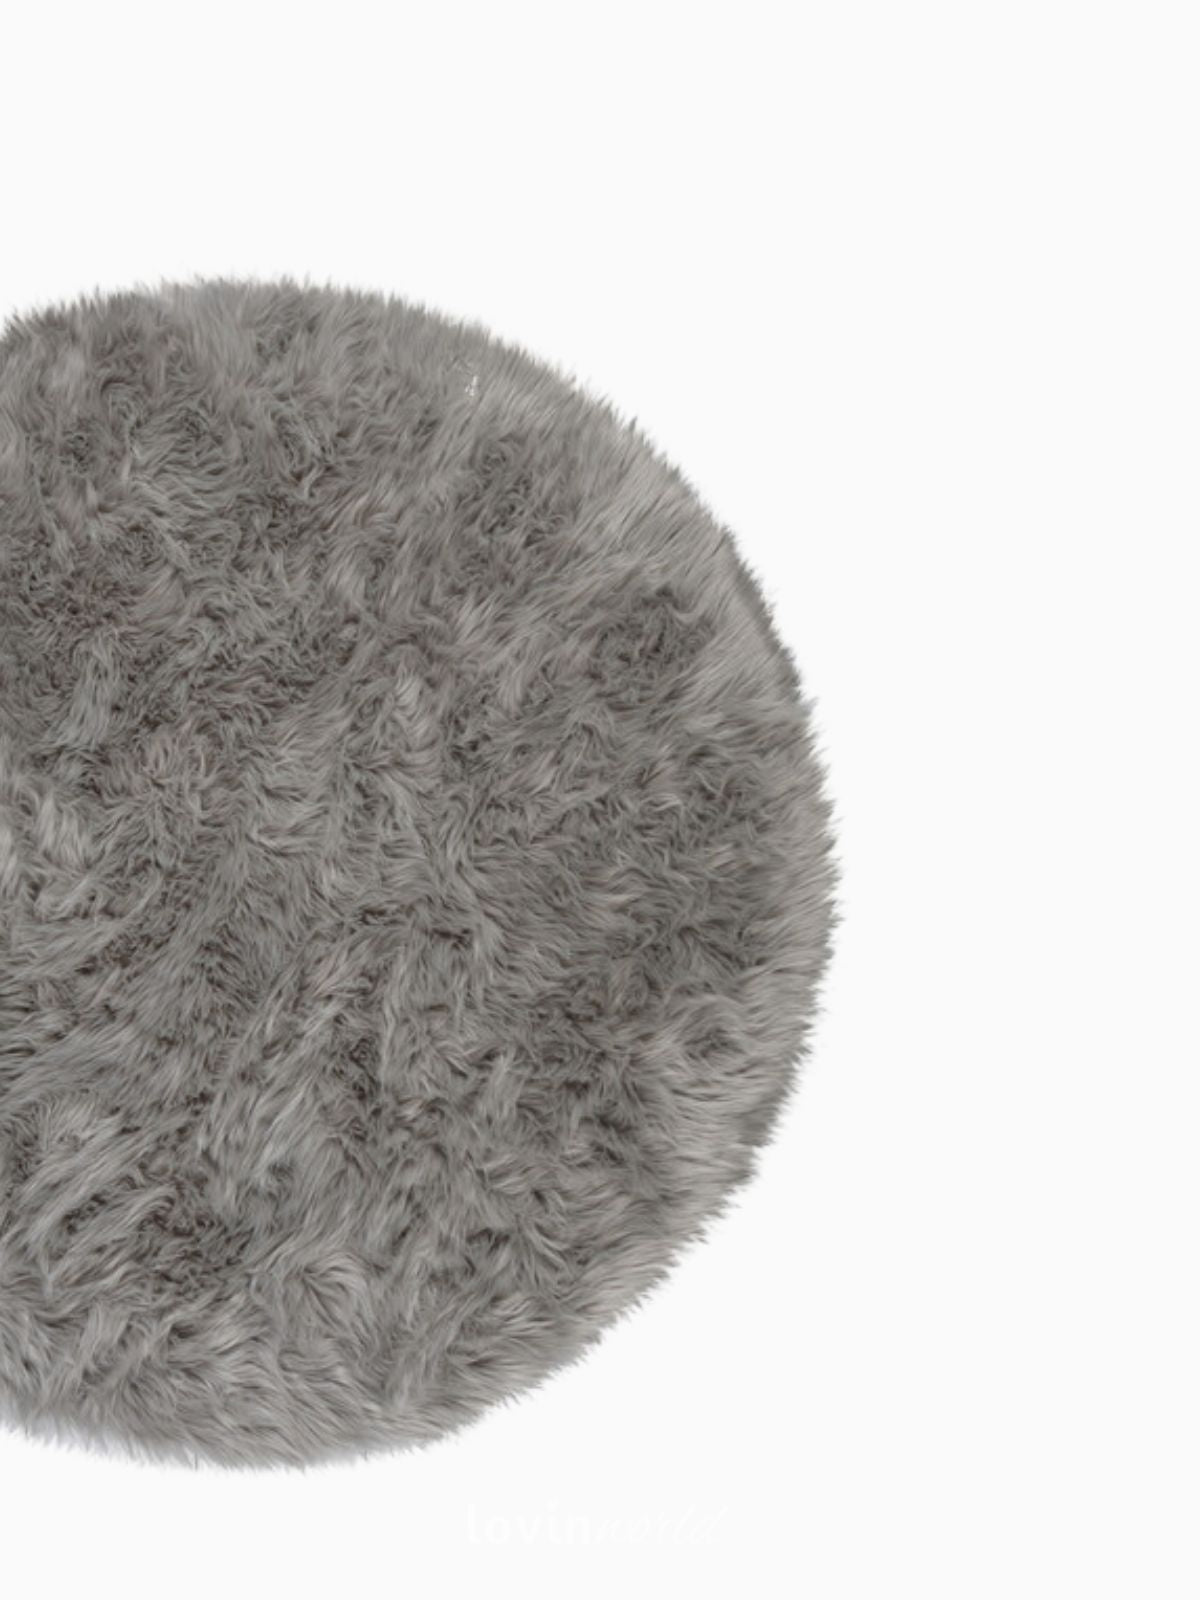 Tappeto rotondo shaggy Sheepskin in poliestere, colore grigio 120x120 cm.-3